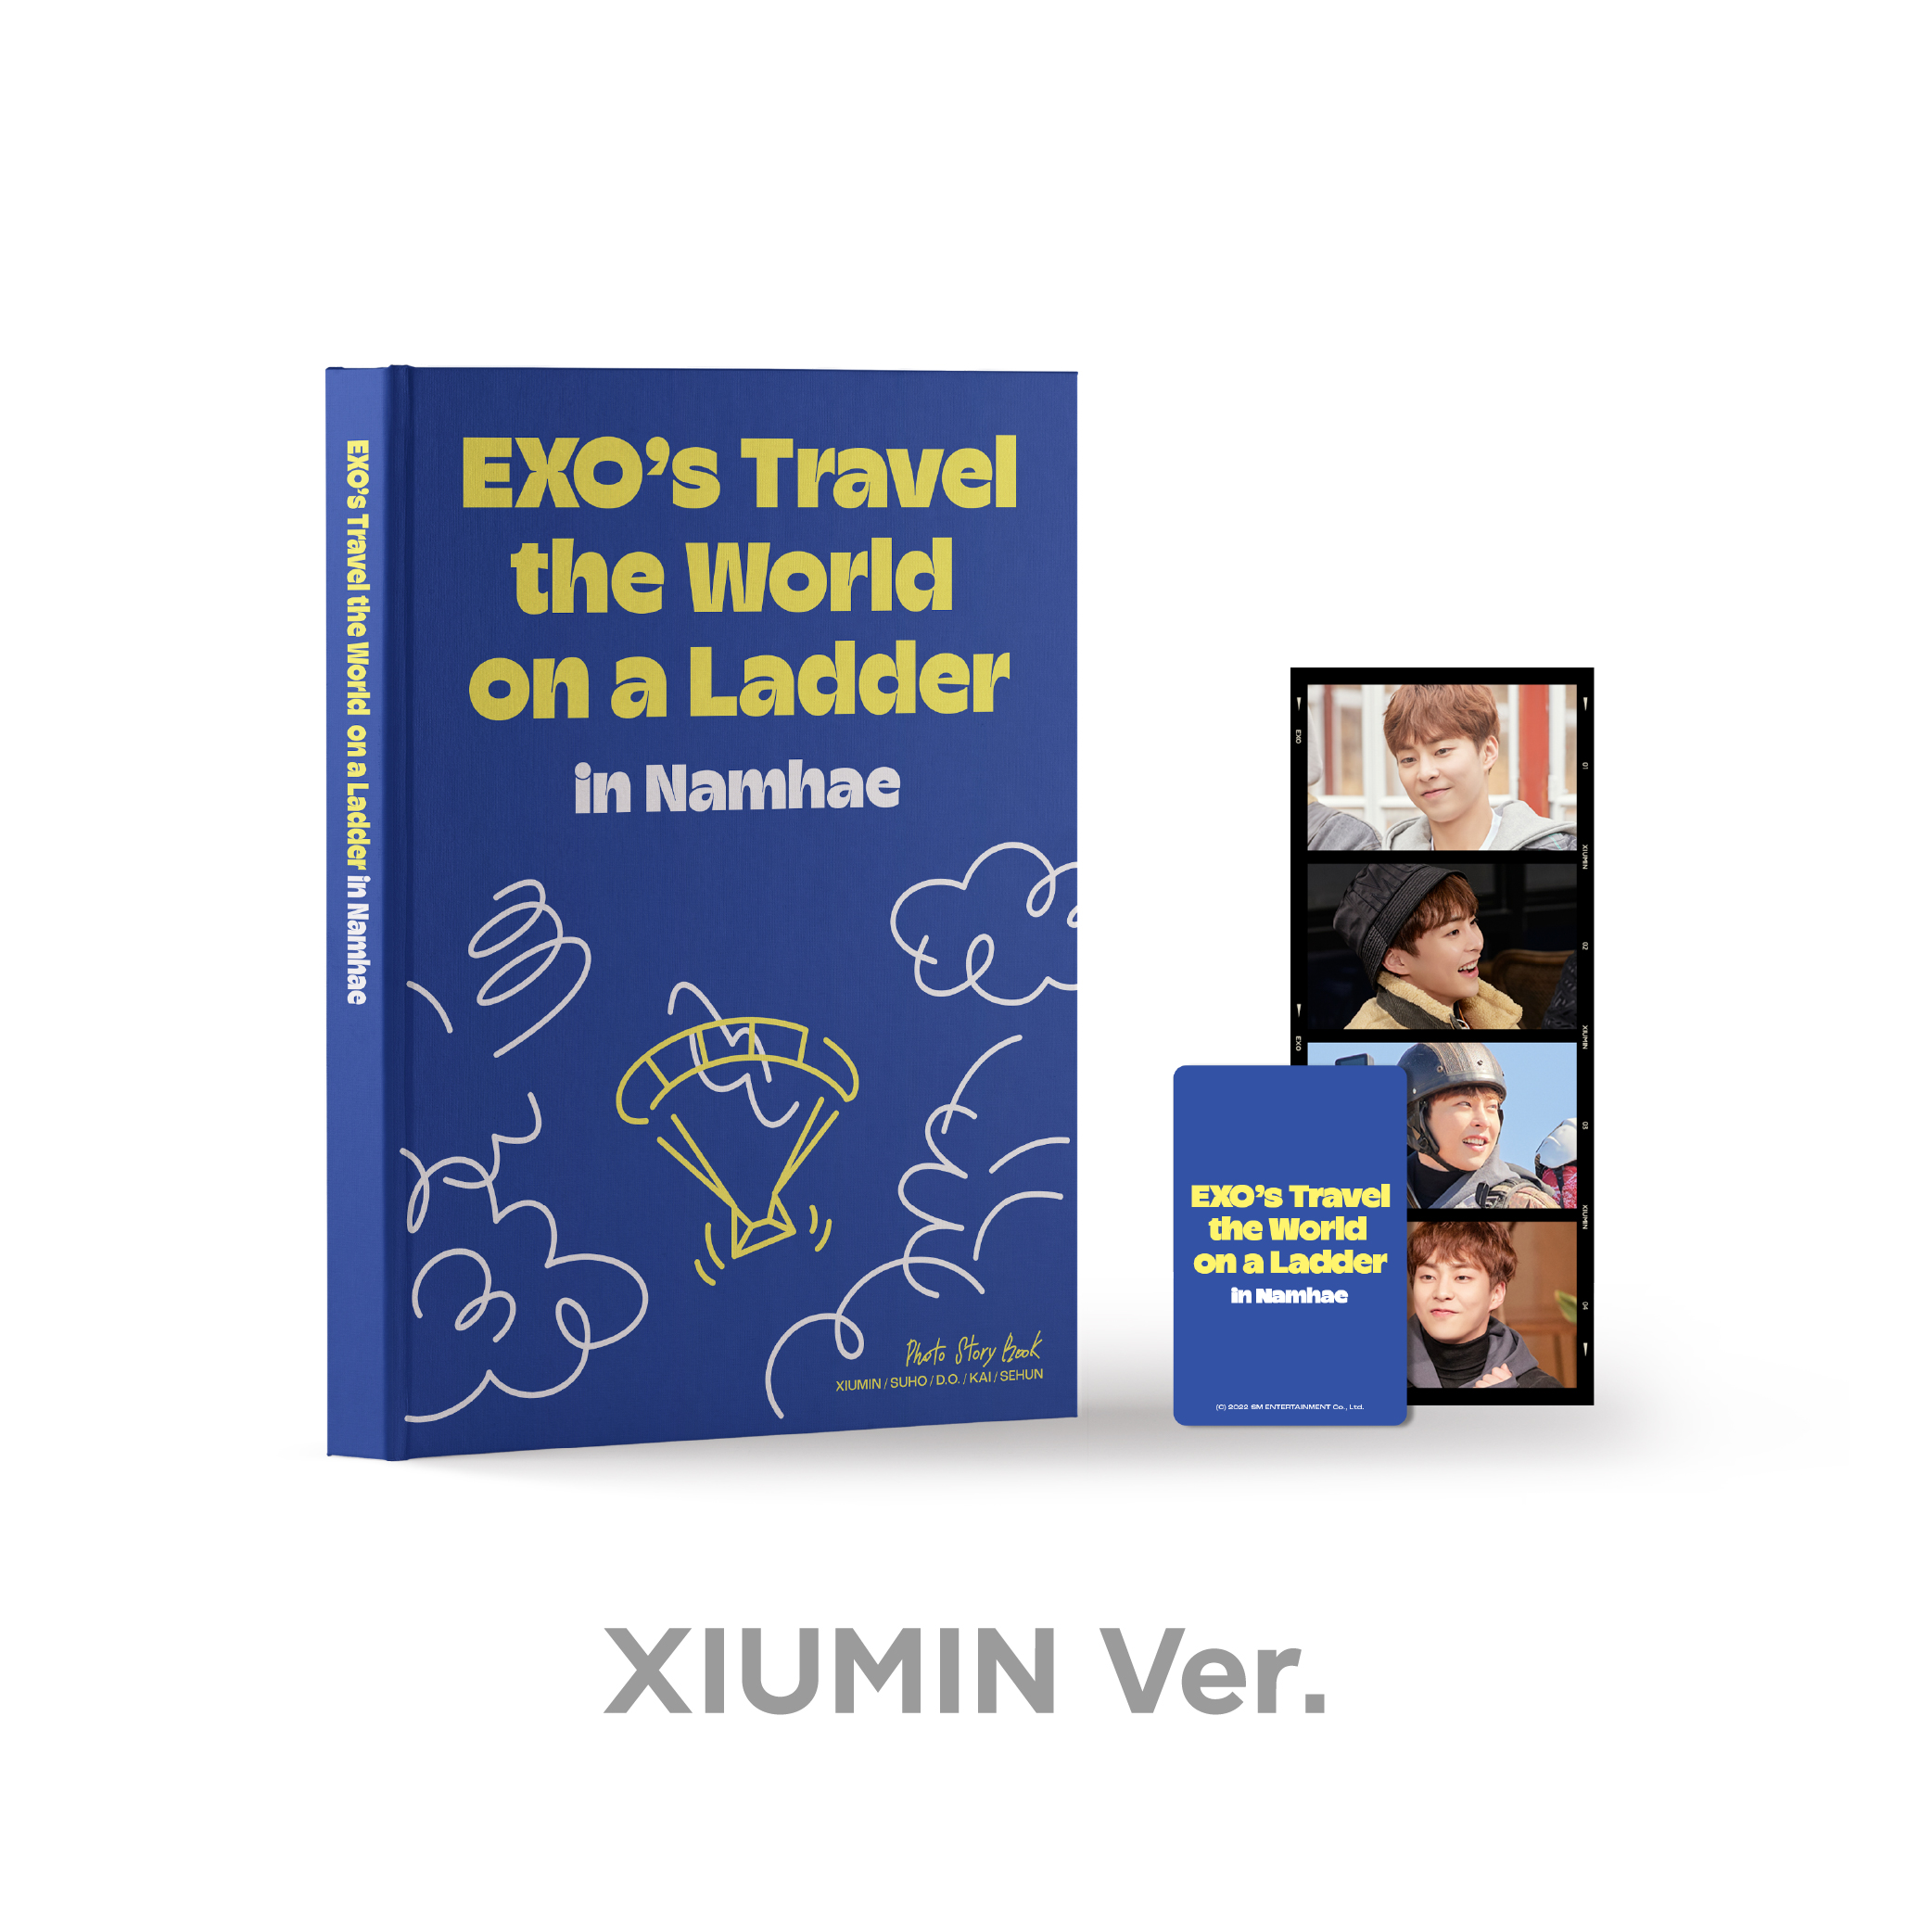 EXO - 엑소의 사다리 타고 세계여행 - 남해 편 PHOTO STORY BOOK [XIUMIN Ver.]